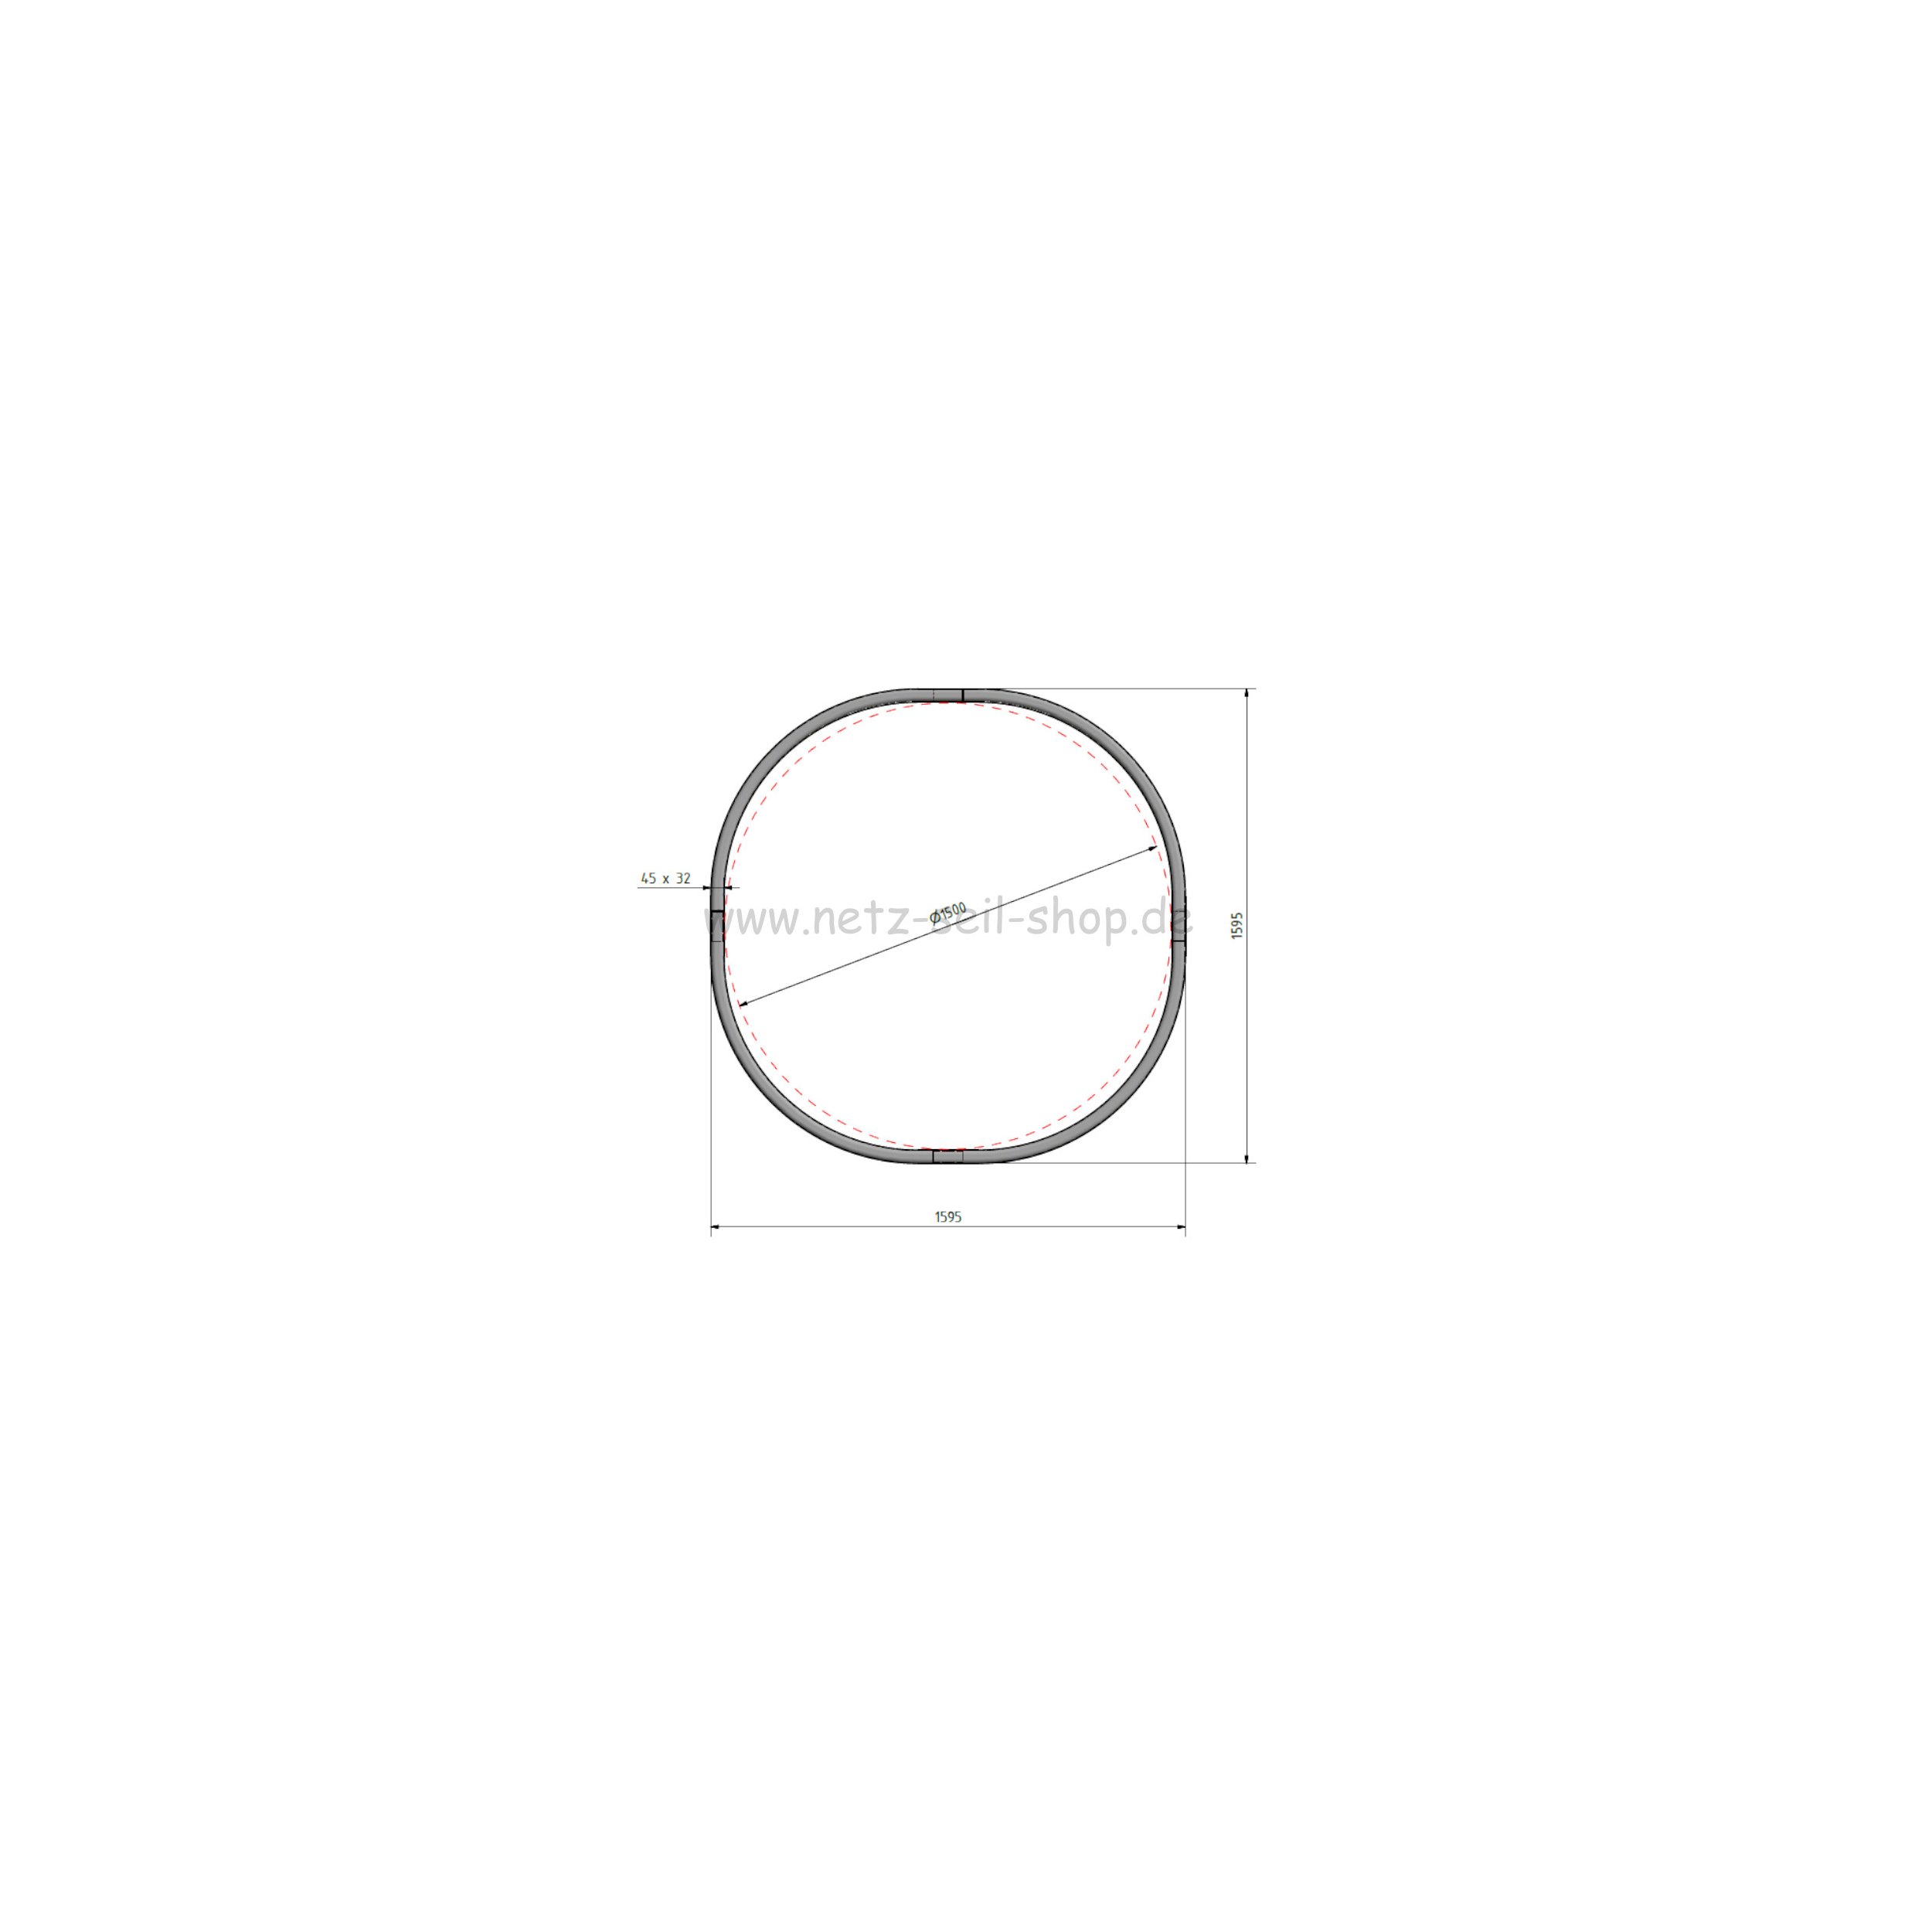 Heunetz für Rundballen, 160 cm Durchmesser, Höhe 120cm,  Ø 5 mm Garn, # 80 mm Maschenweite mit Kette am Netz befestigt